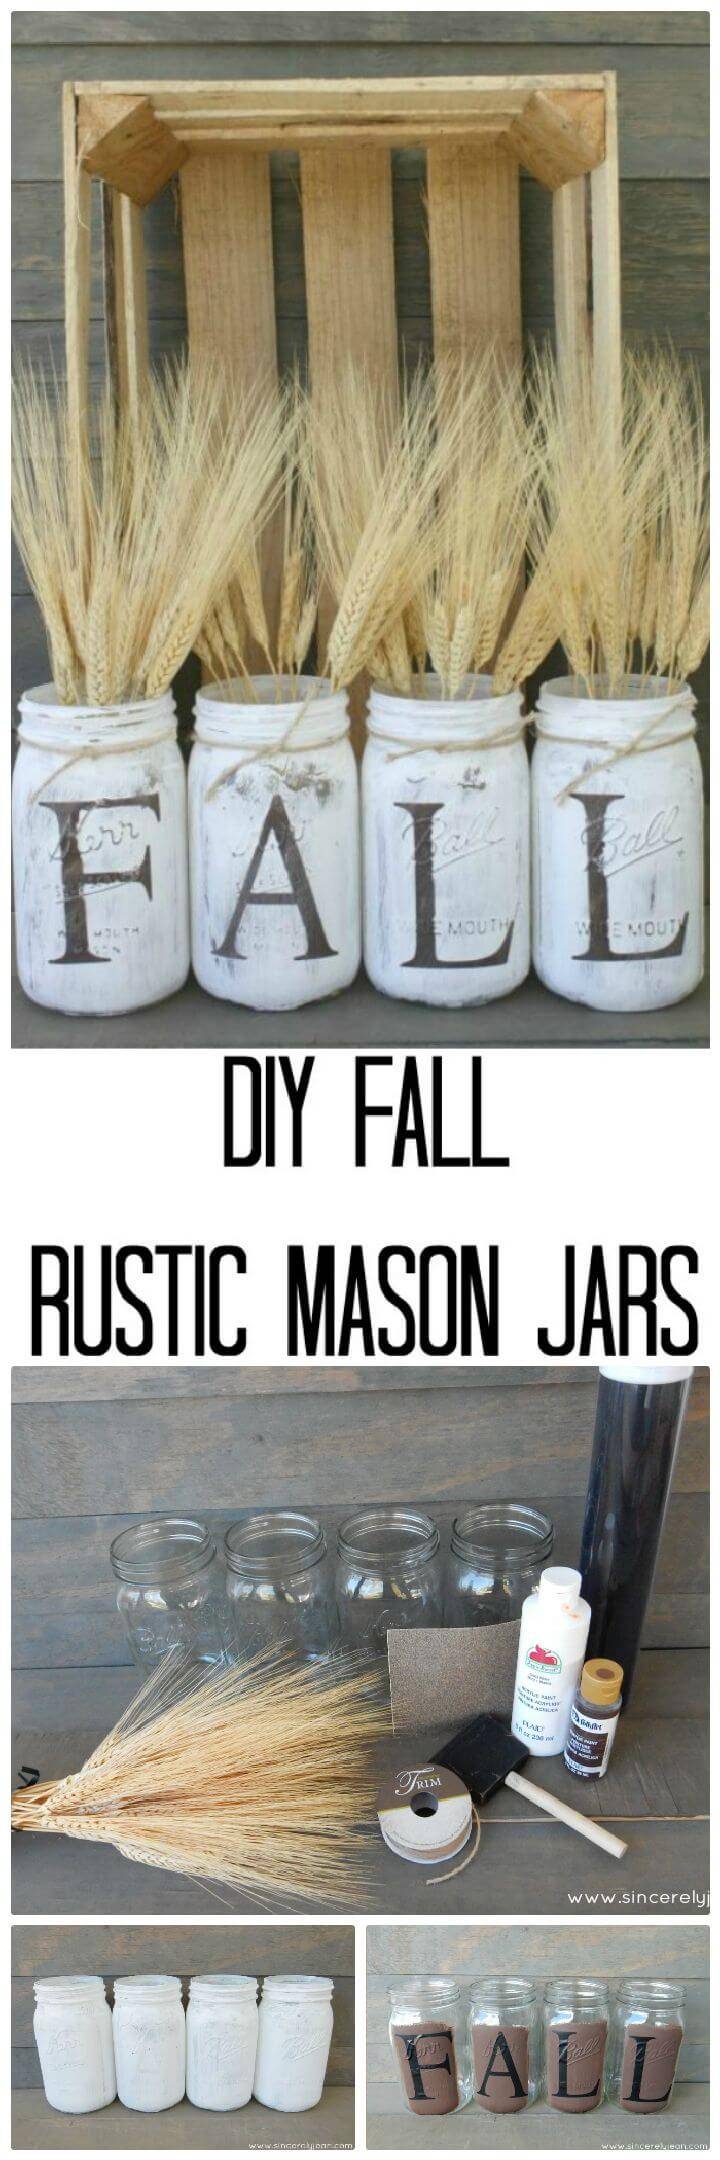 DIY Fall Rustic Mason Jars